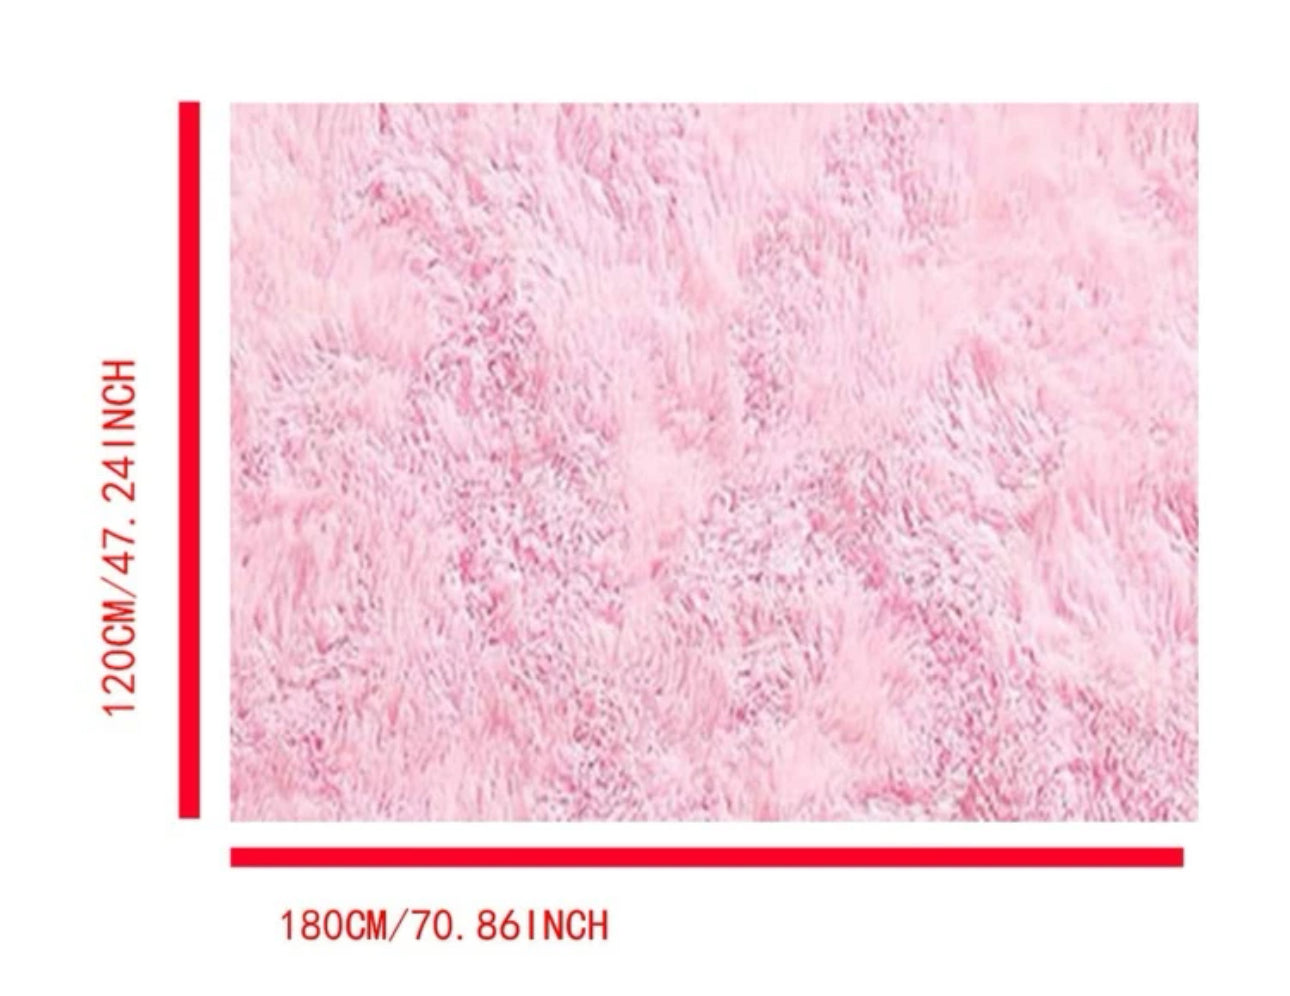 Pink shaggy rug